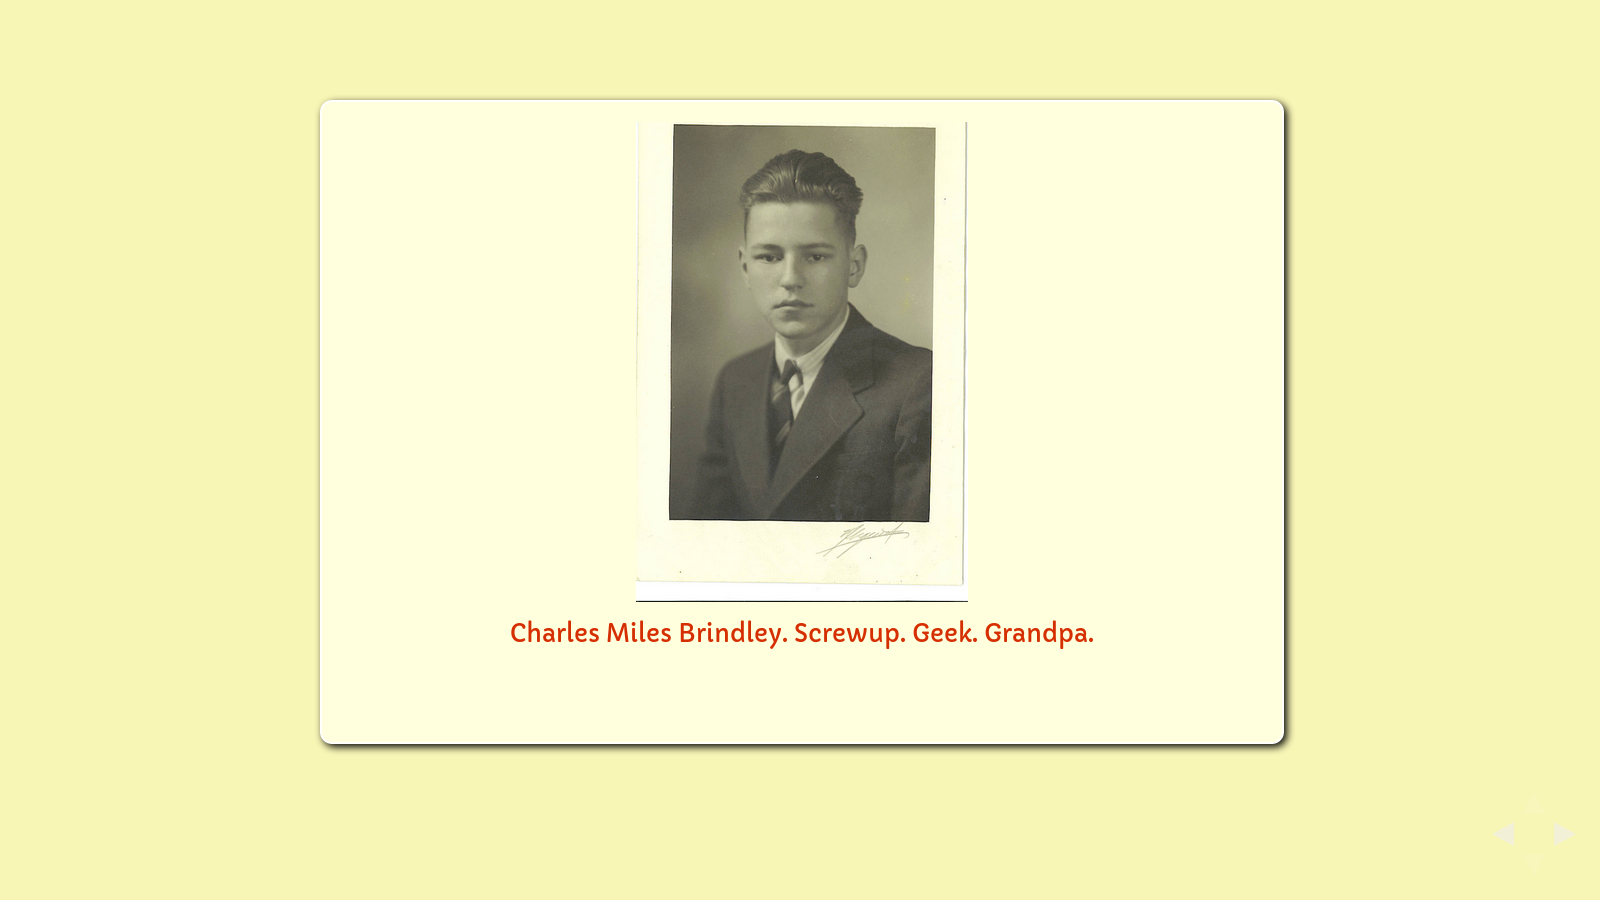 Slide: "Charles Miles Brindley. Screwup. Geek. My grandpa."